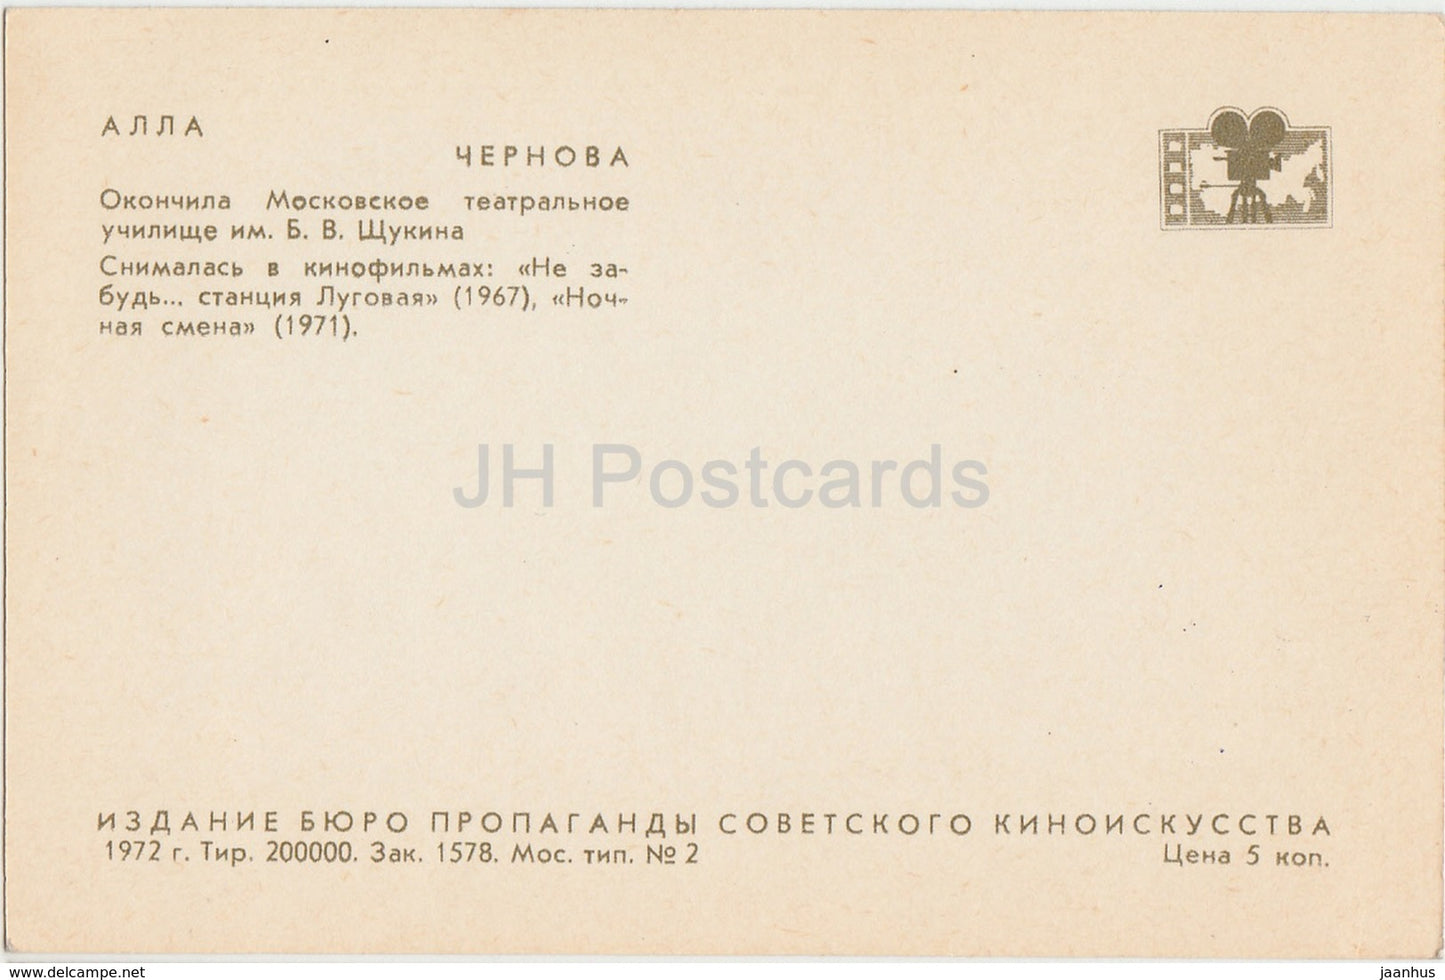 Alla Chernova - movie actress - theatre - 1972 - Russia USSR - unused - JH Postcards